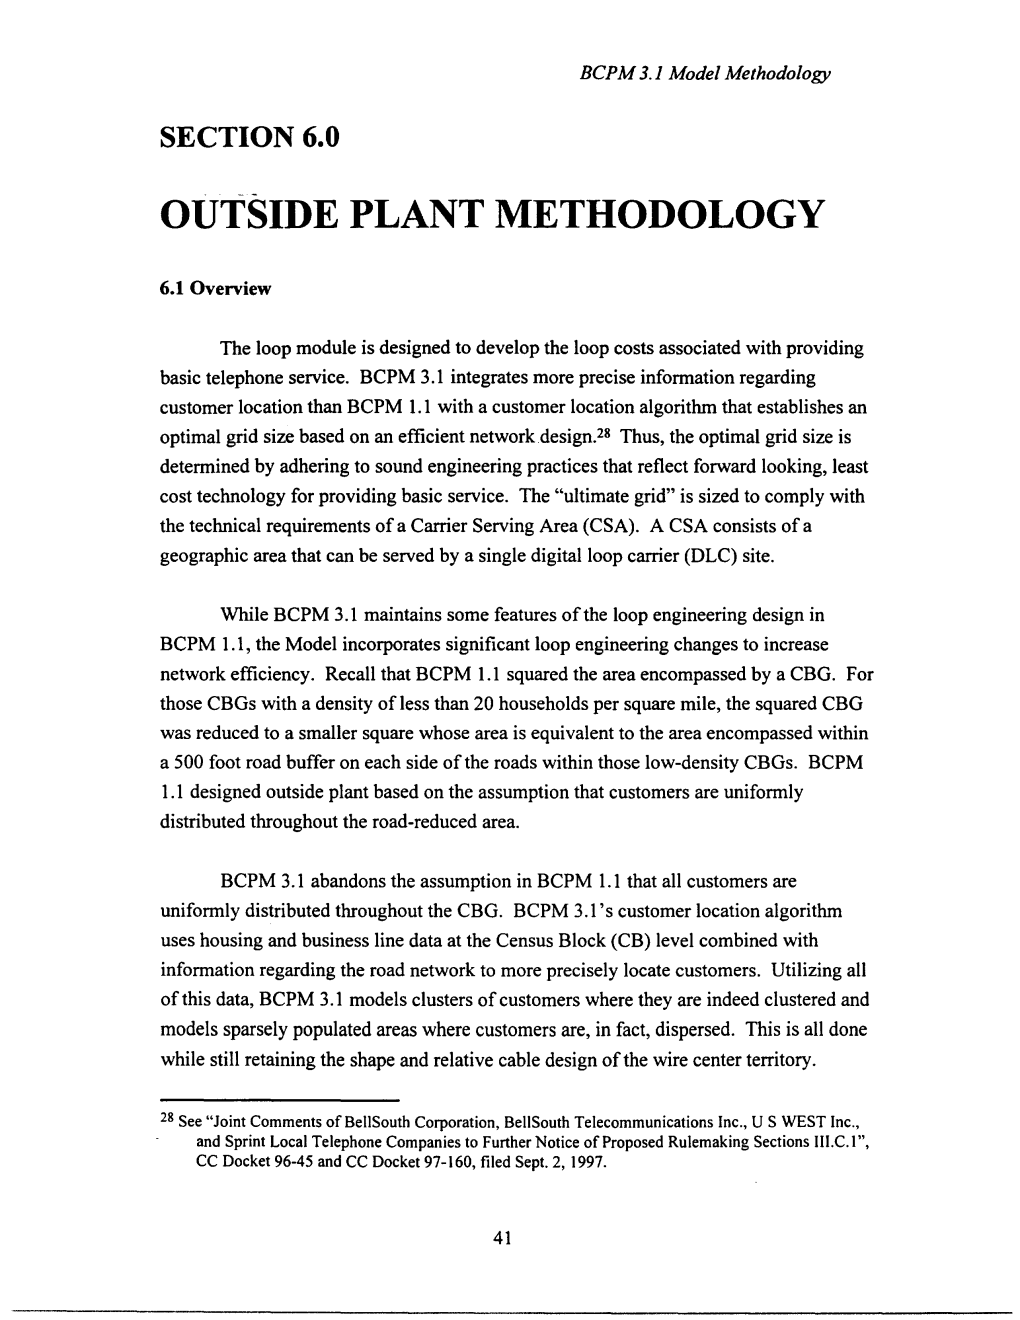 Outside Plant Methodology